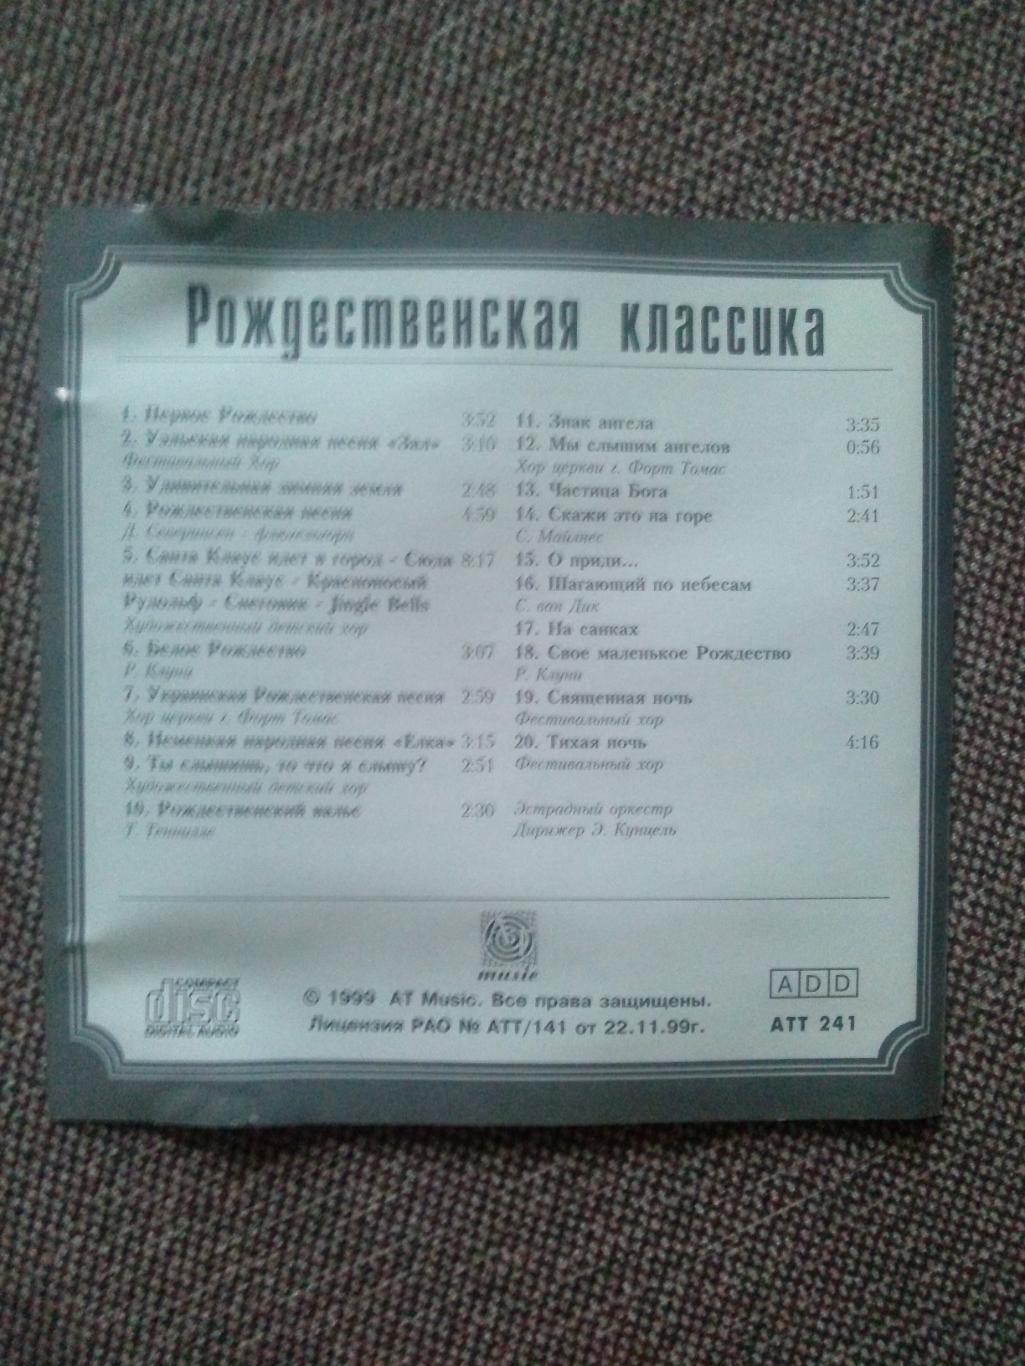 CD диск : Шедевры классики - Рождественская классика (Классическая музыка) 1